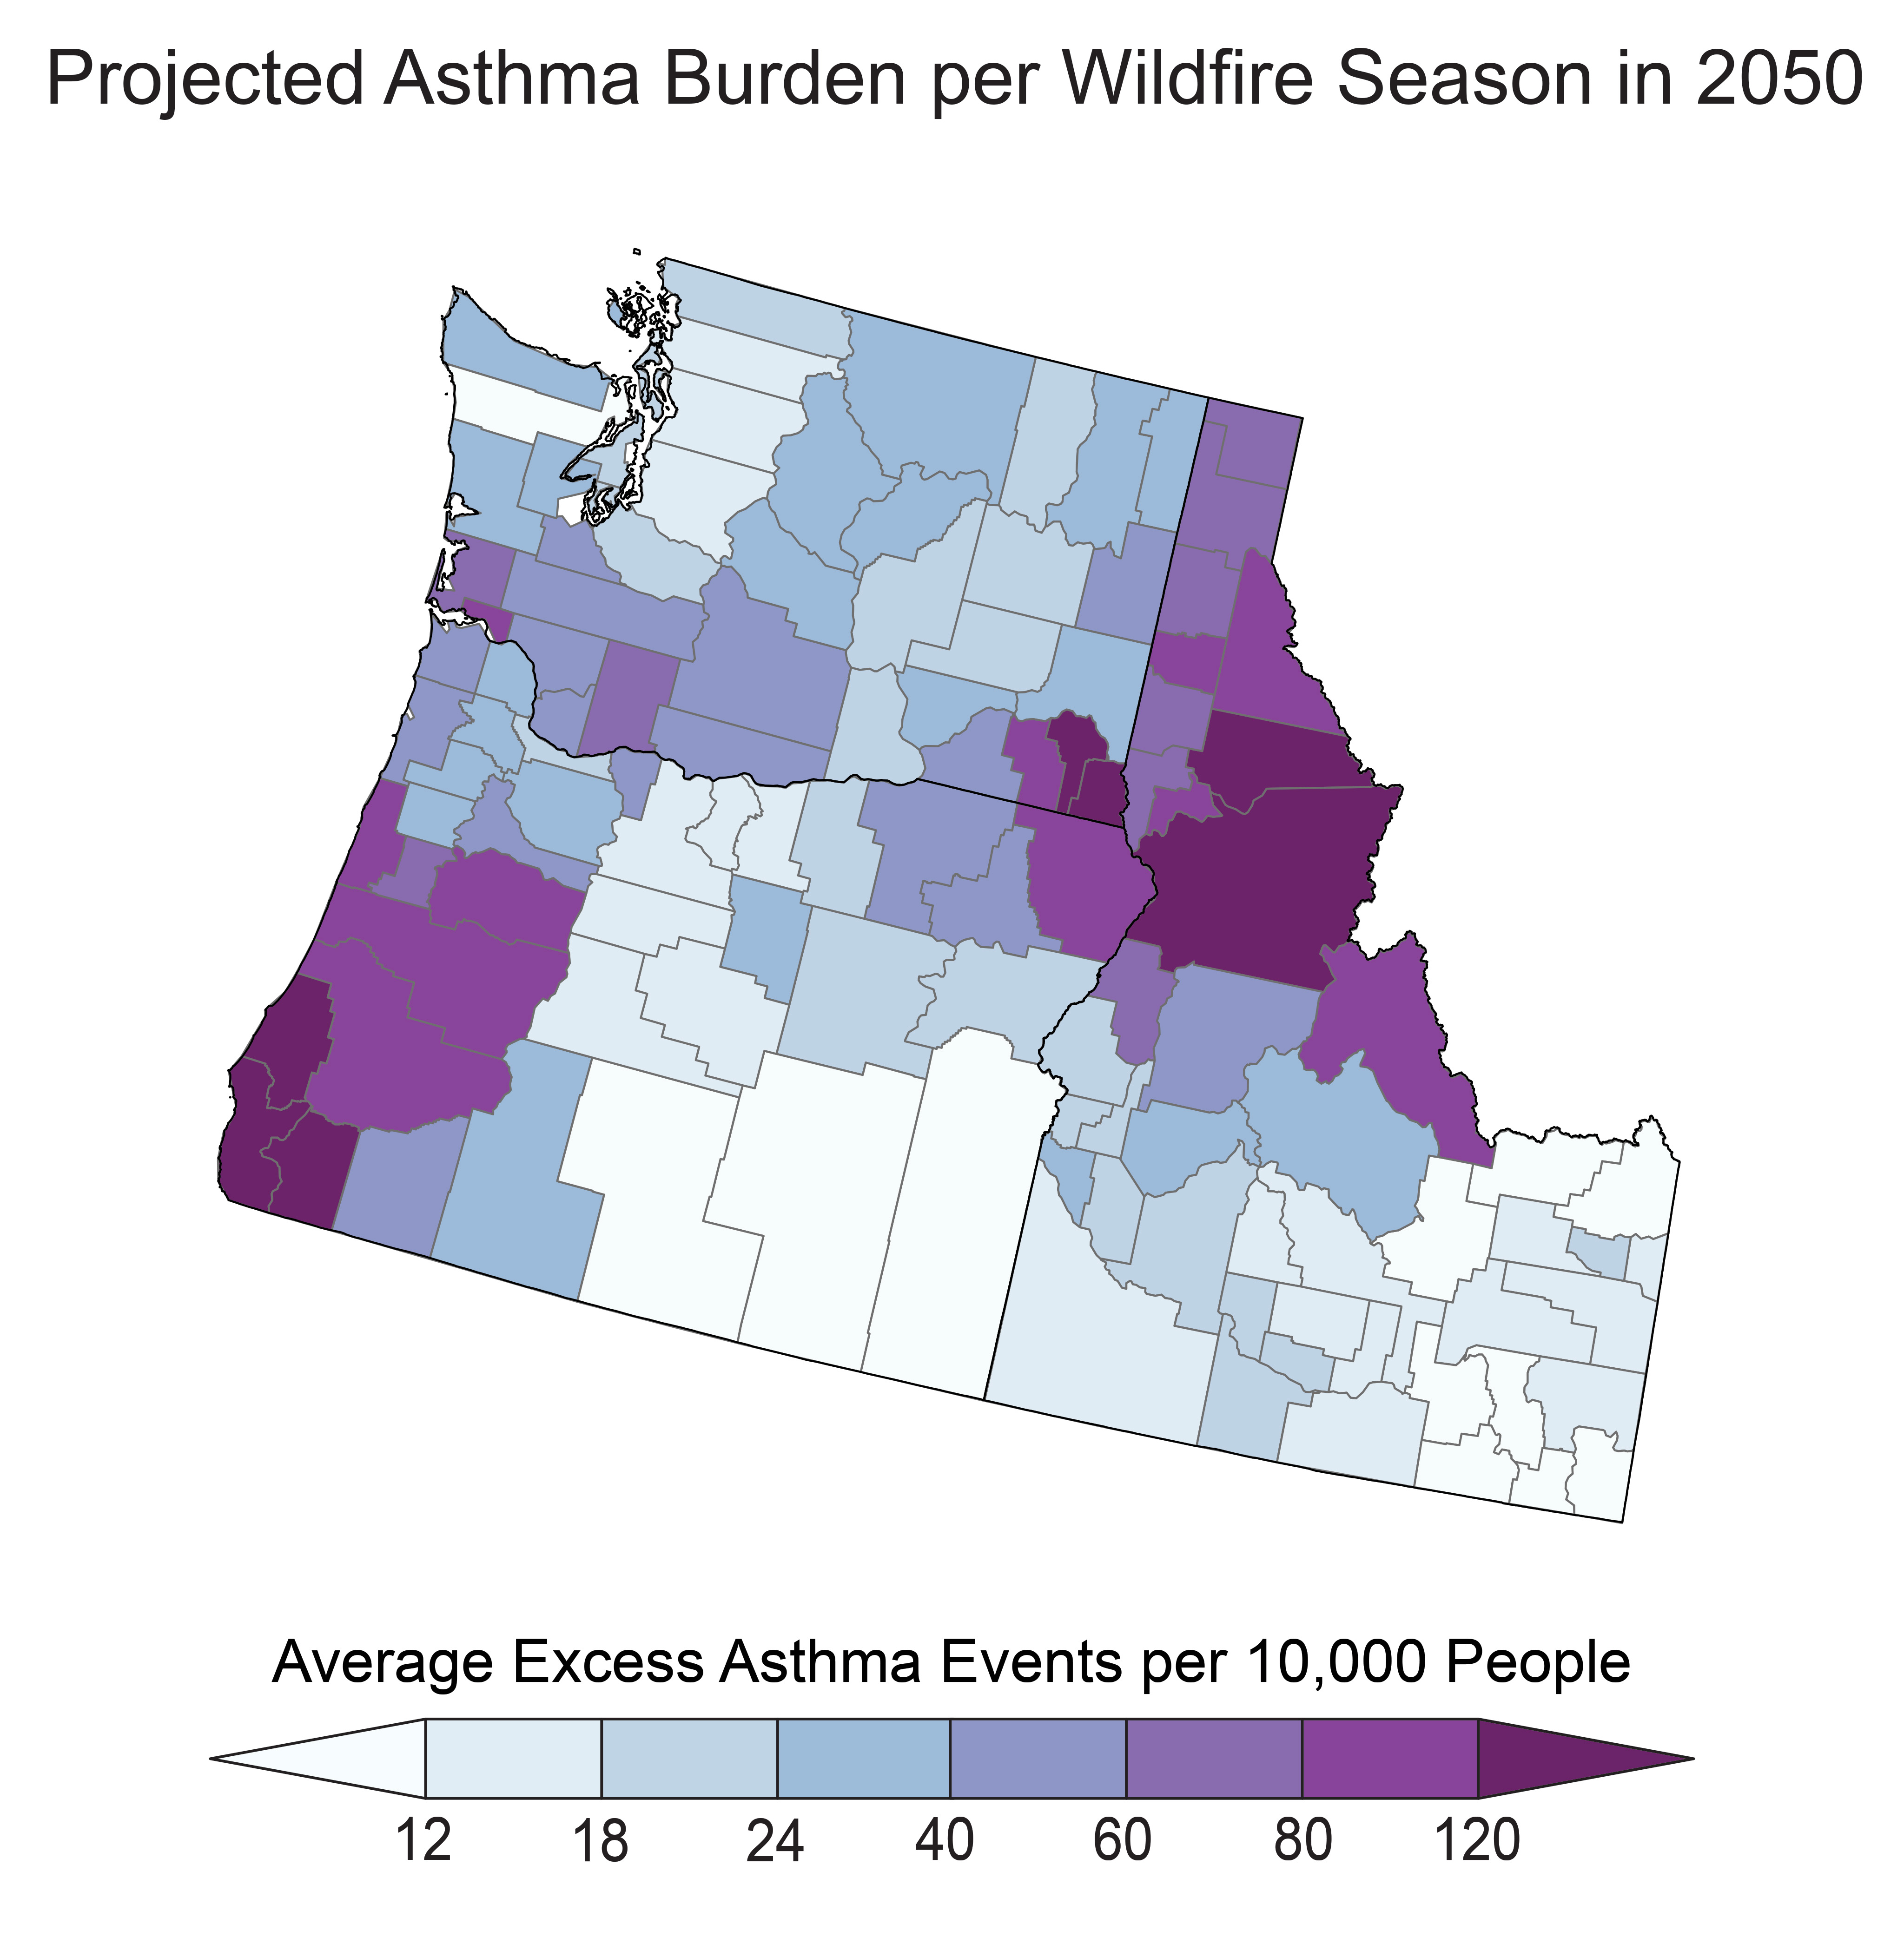 Projected Asthma Burden per Wildfire Season in 2050